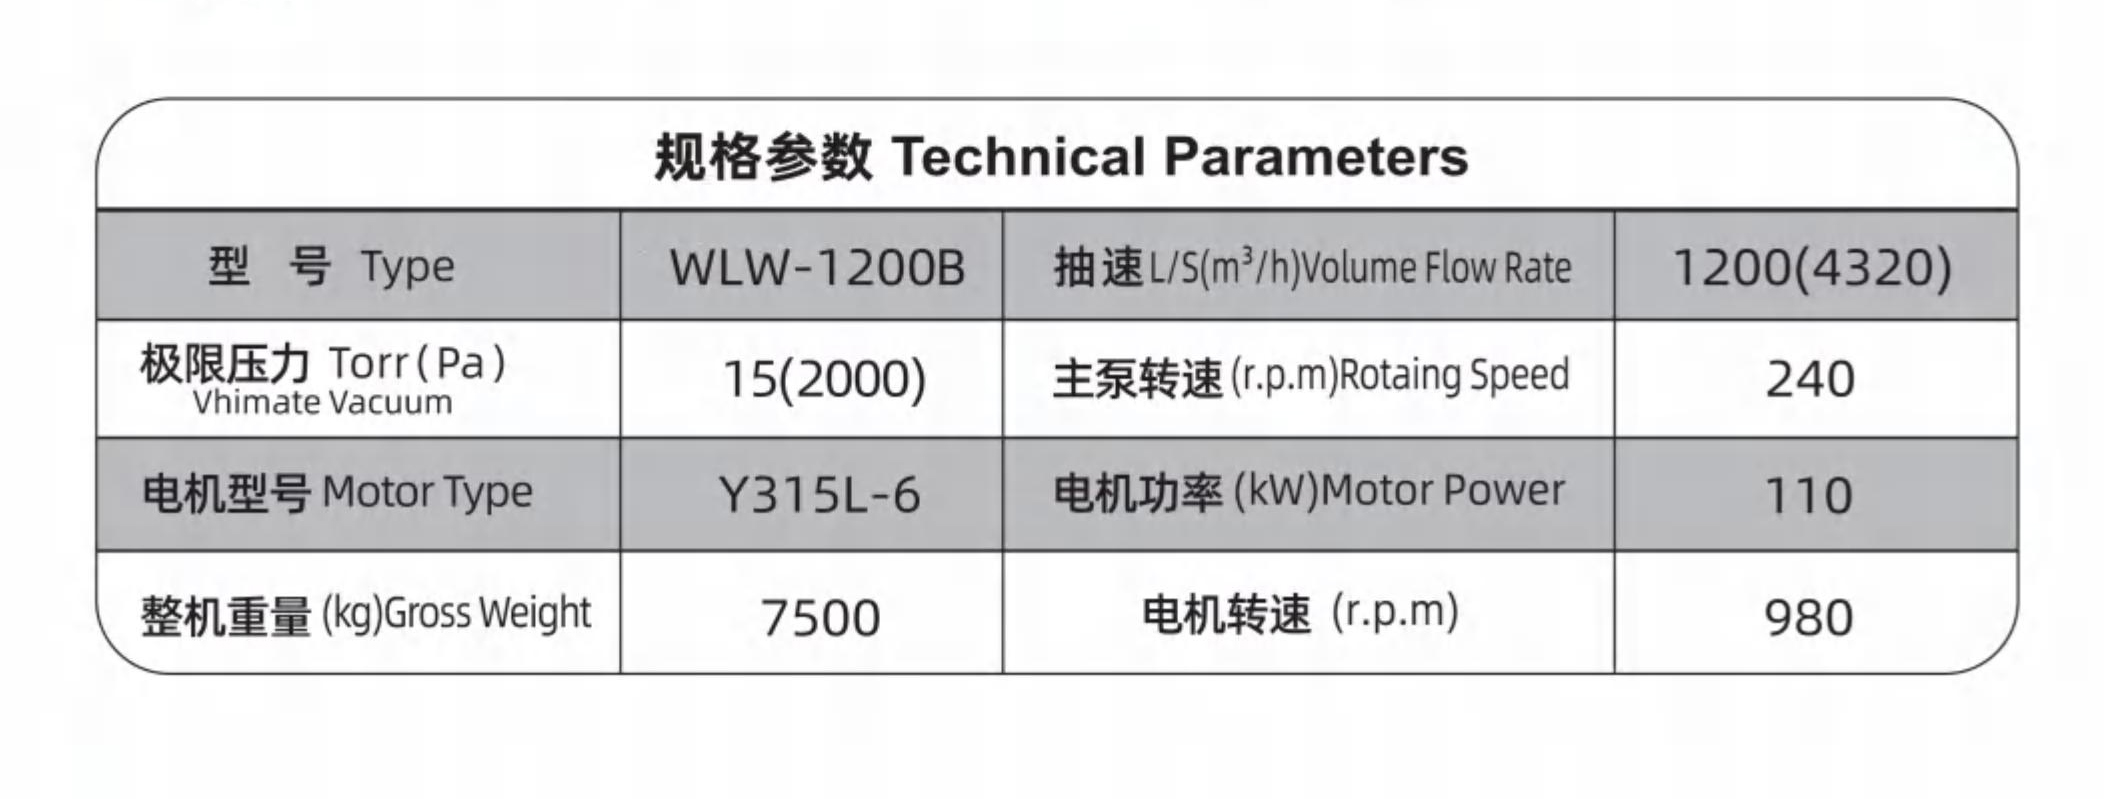 WLW往复立式无油真空泵产品参数图